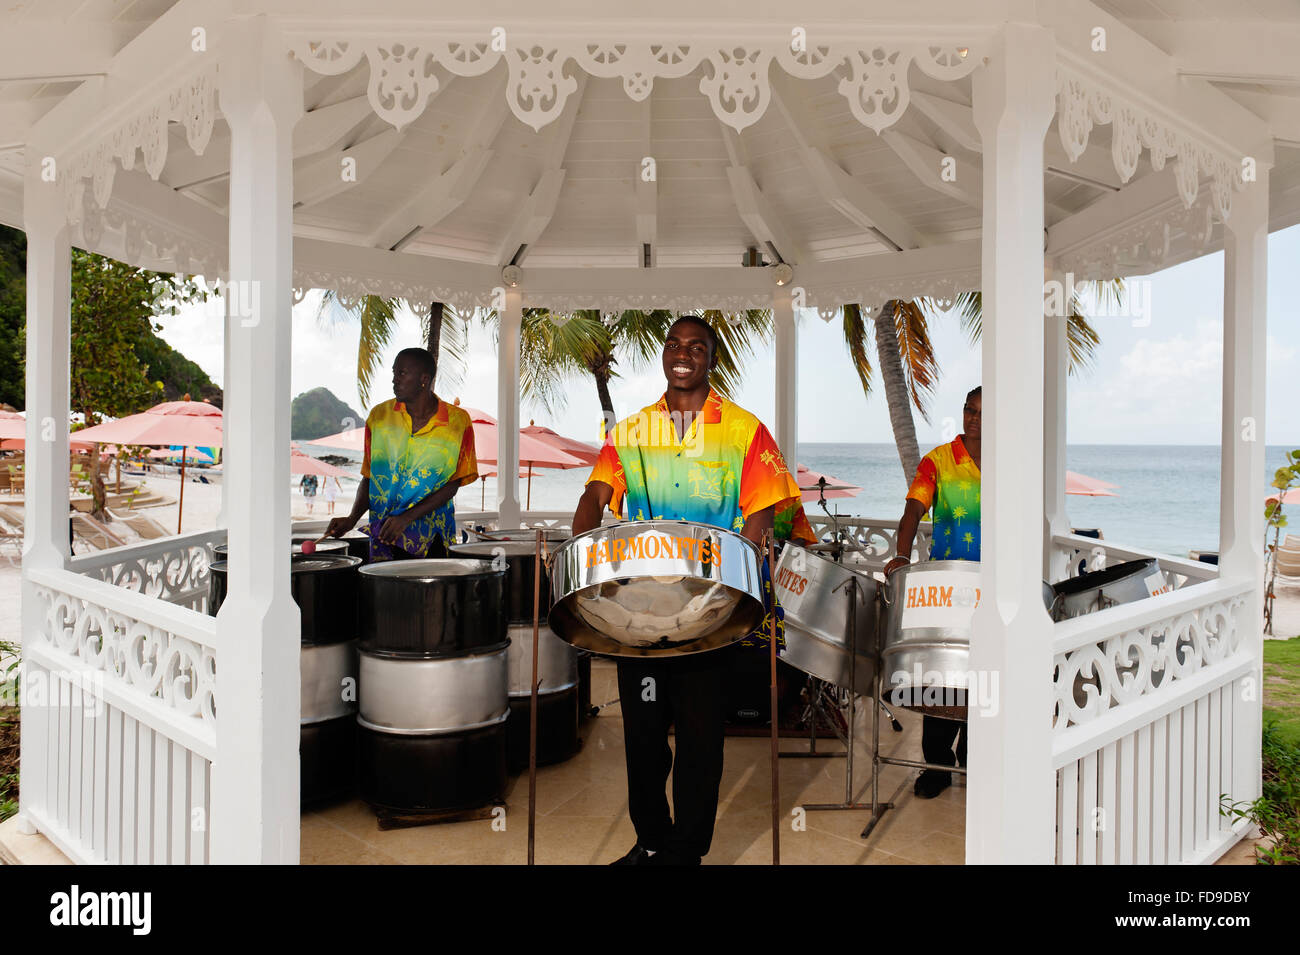 Tambores de acero juegan en la pagoda, sobre la playa, Santa Lucía, Antillas, Caribe Foto de stock